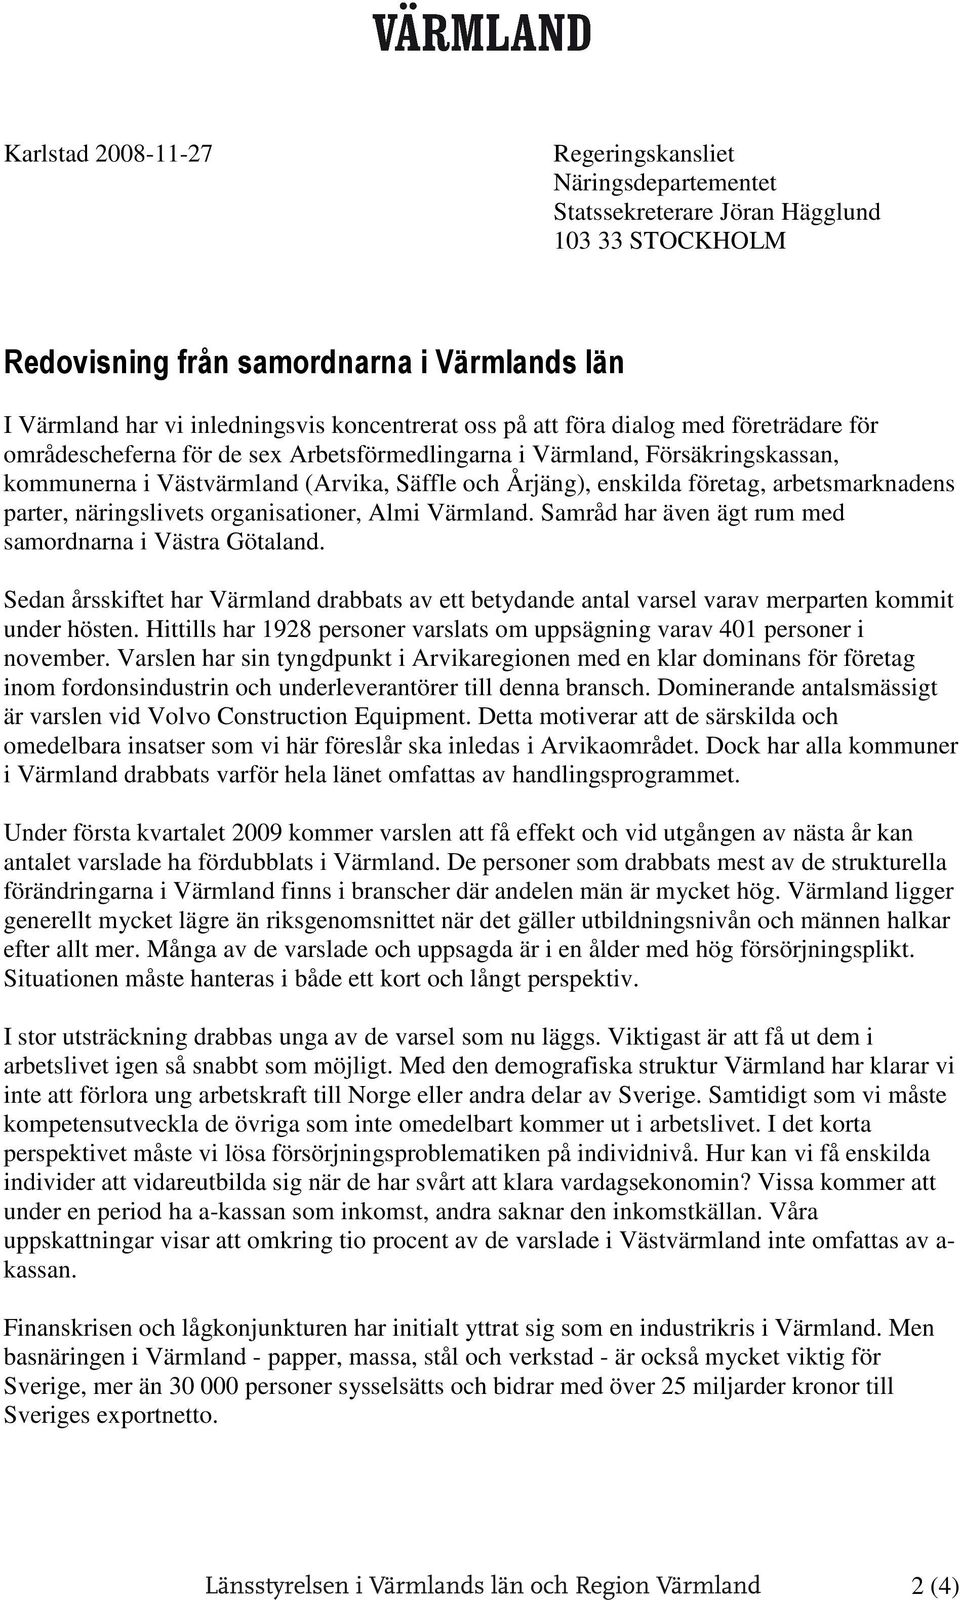 arbetsmarknadens parter, näringslivets rganisatiner, Almi Värmland. Samråd har även ägt rum med samrdnarna i Västra Götaland.